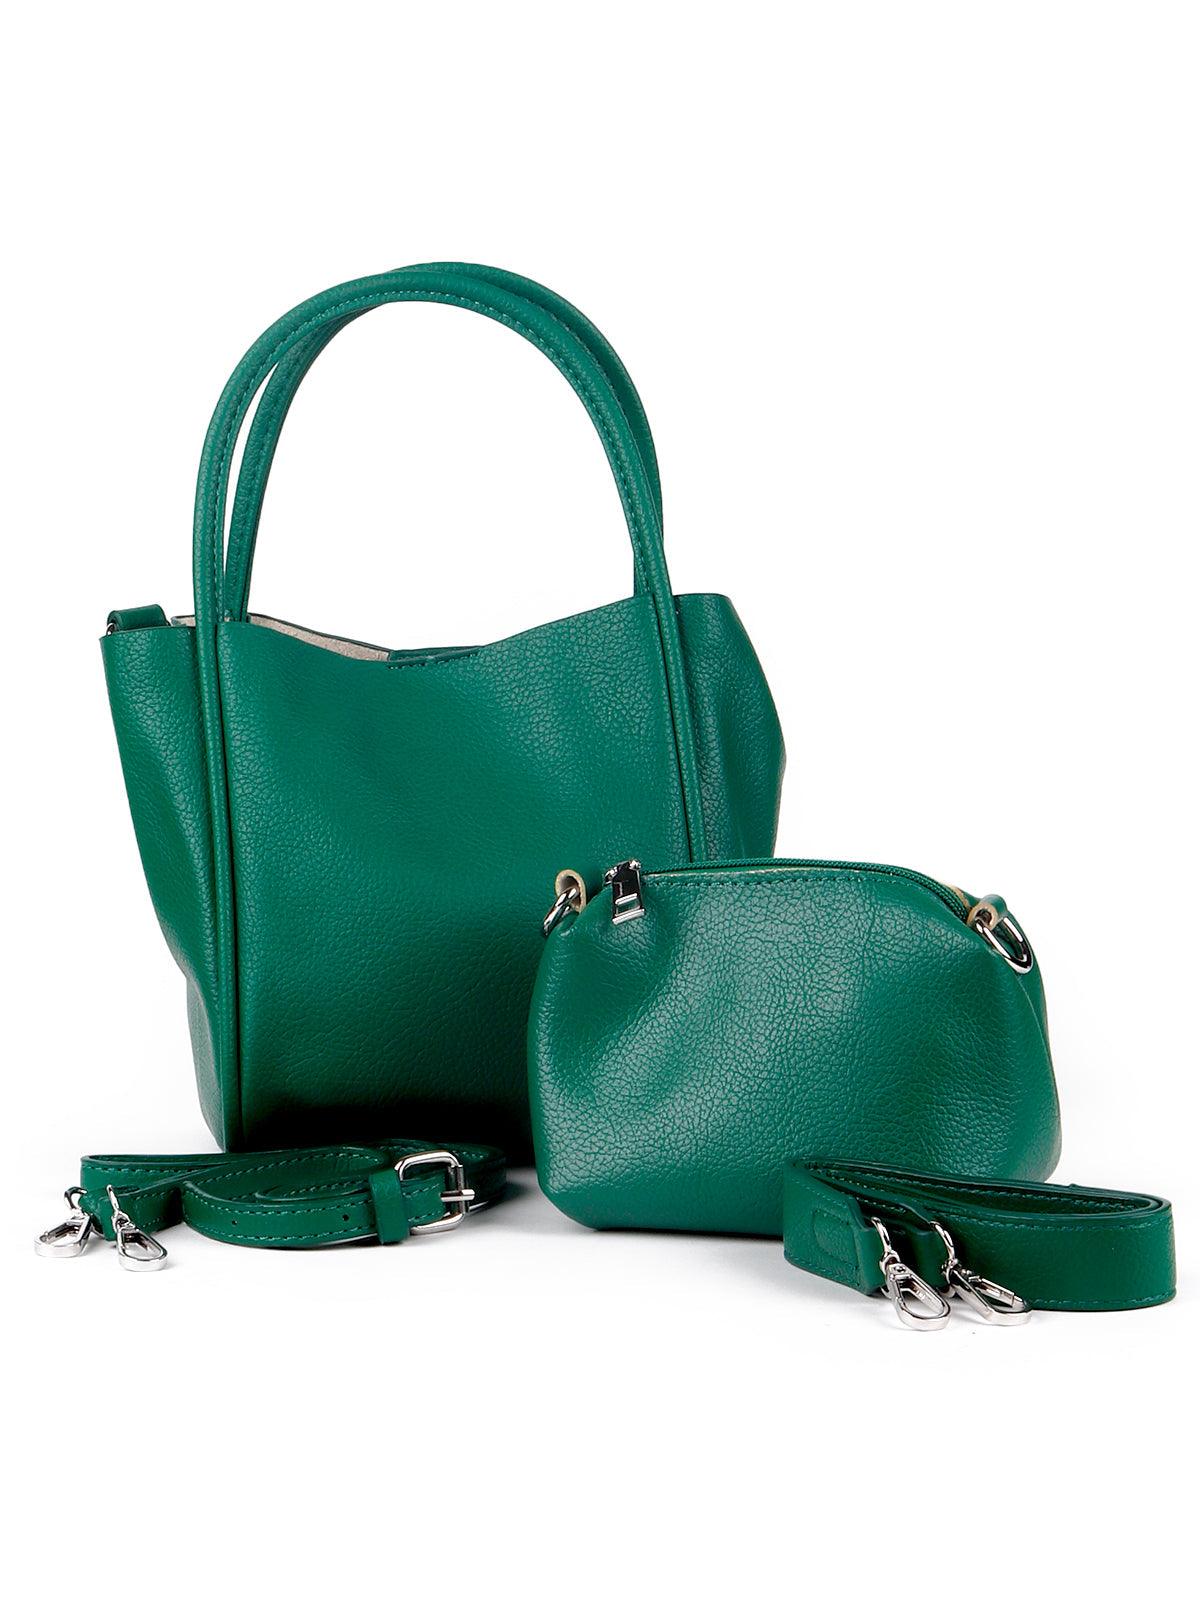 Classic green structured textured shoulder bag - Odette